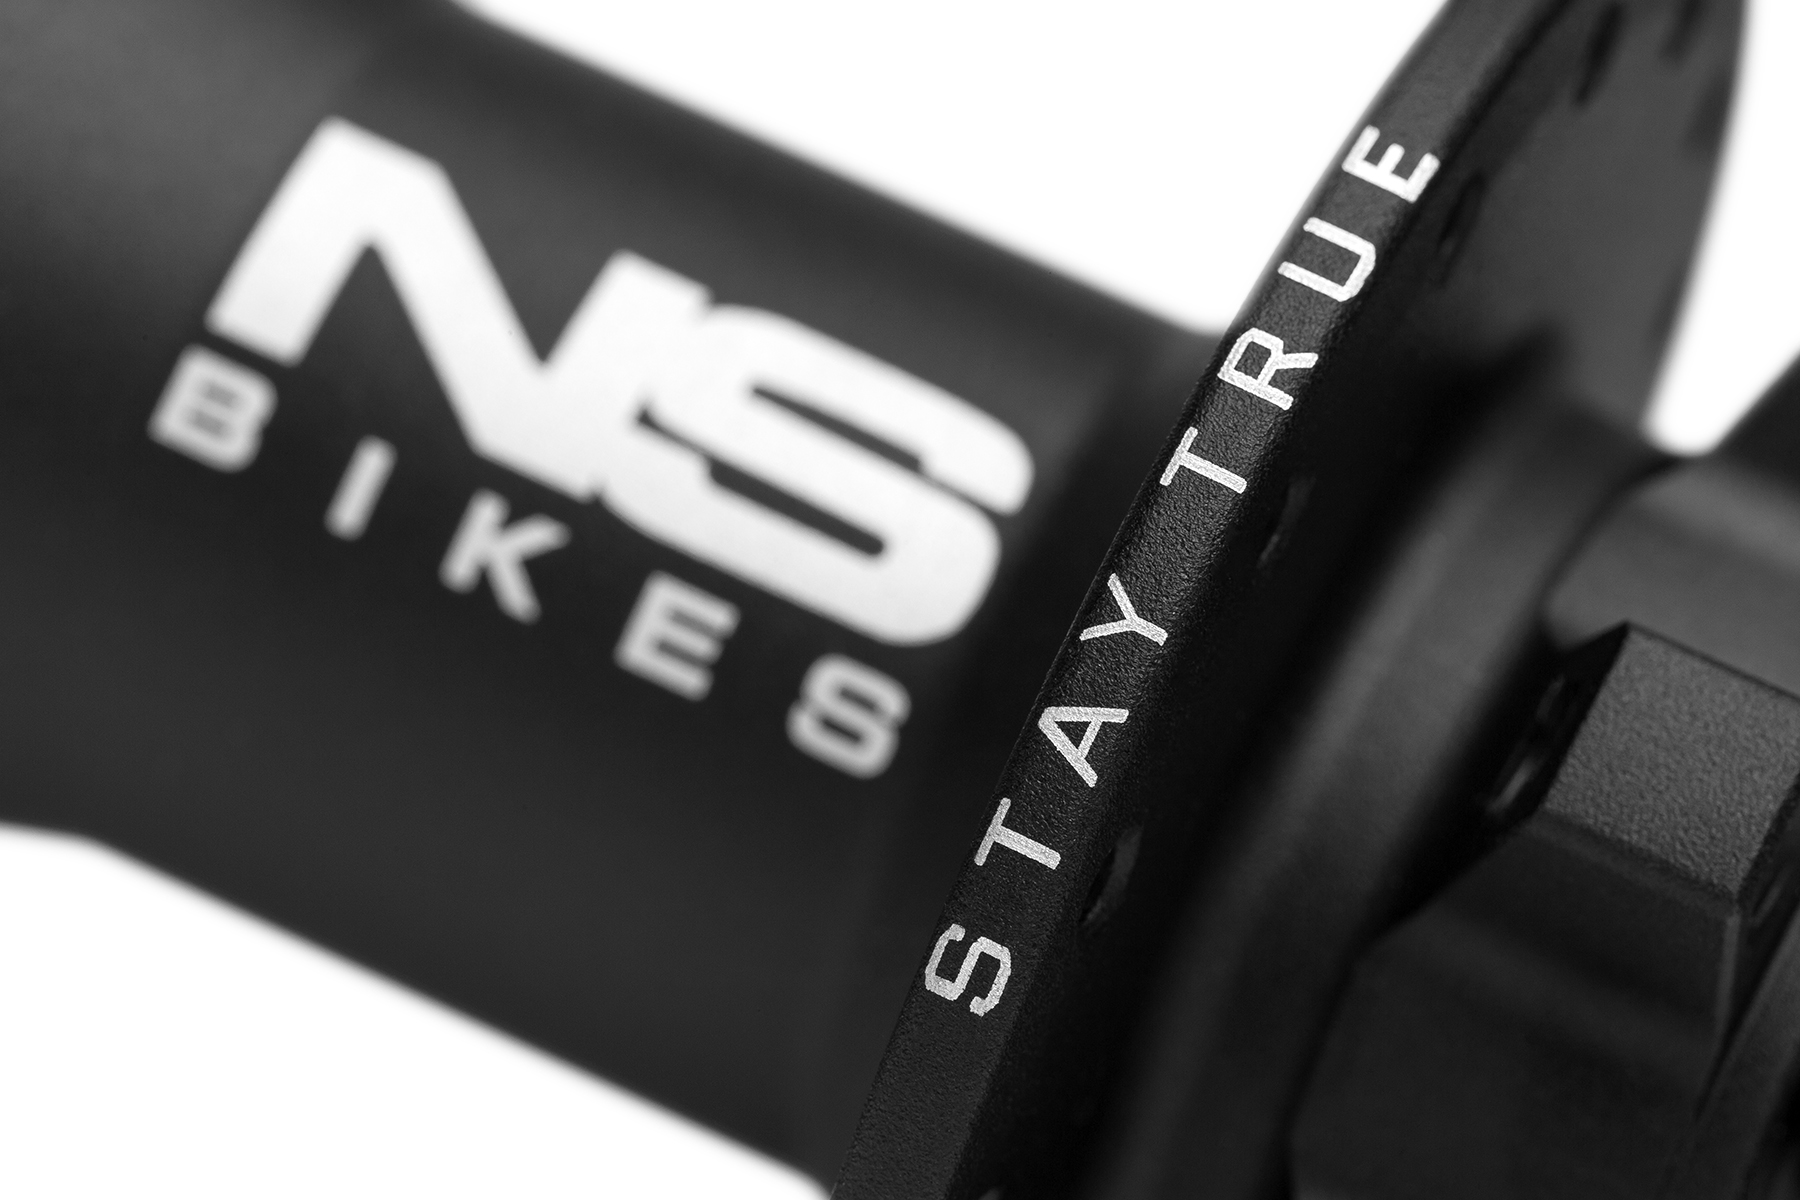 NS Bikes - Stay True!